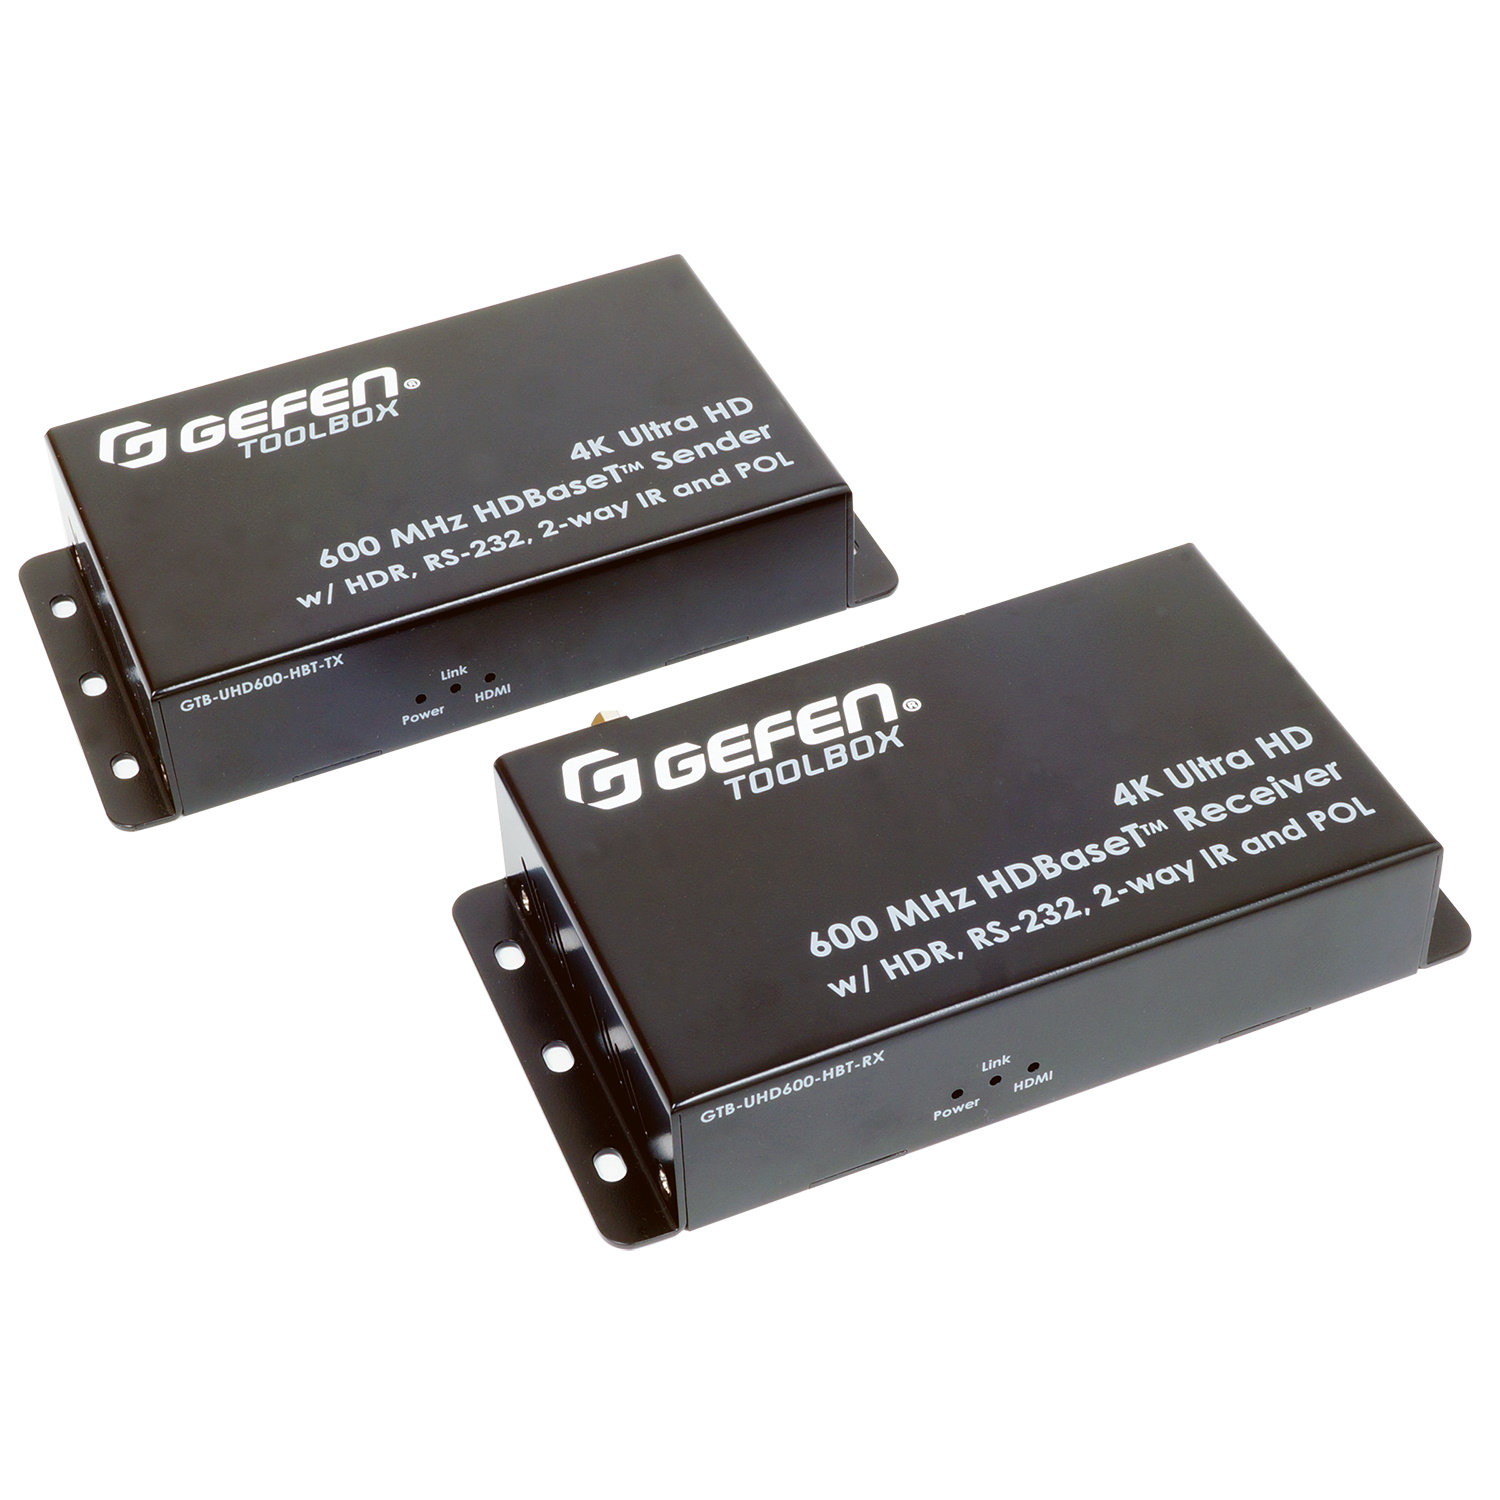 HDMI коммутаторы, разветвители, повторители Gefen GTB-UHD600-HBT hdmi коммутаторы разветвители повторители gefen gtb uhd600 hbtl